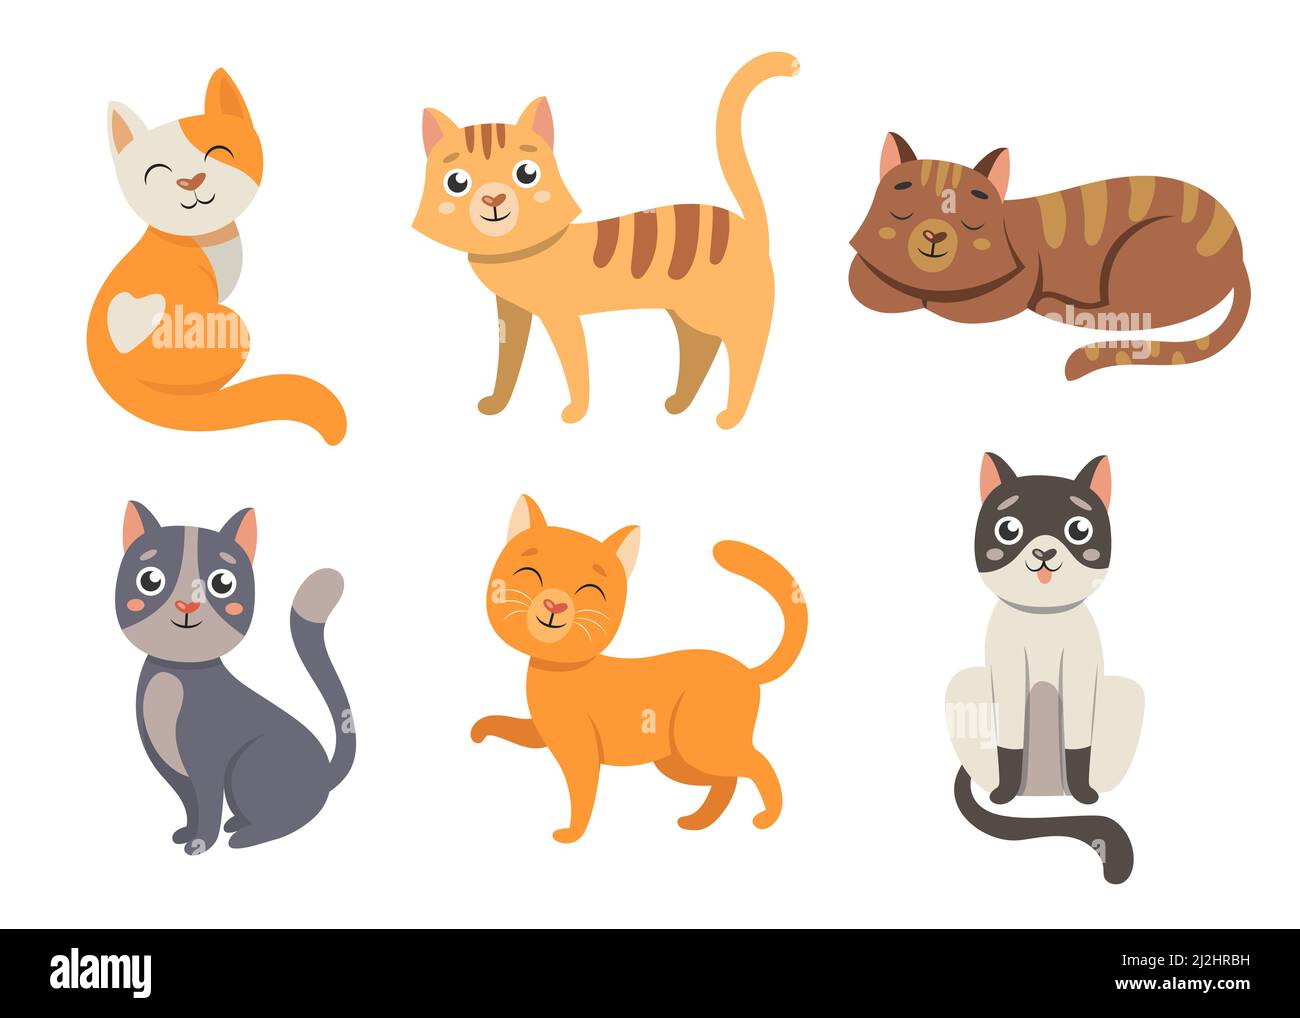 Niedliche Katze Cartoon Figuren Vektor Illustrationen Set. Katzen mit herzförmigen Nasen, fröhliche flauschige Kätzchen lächeln, orange und graue Kätzchen sitzen auf w Stock Vektor